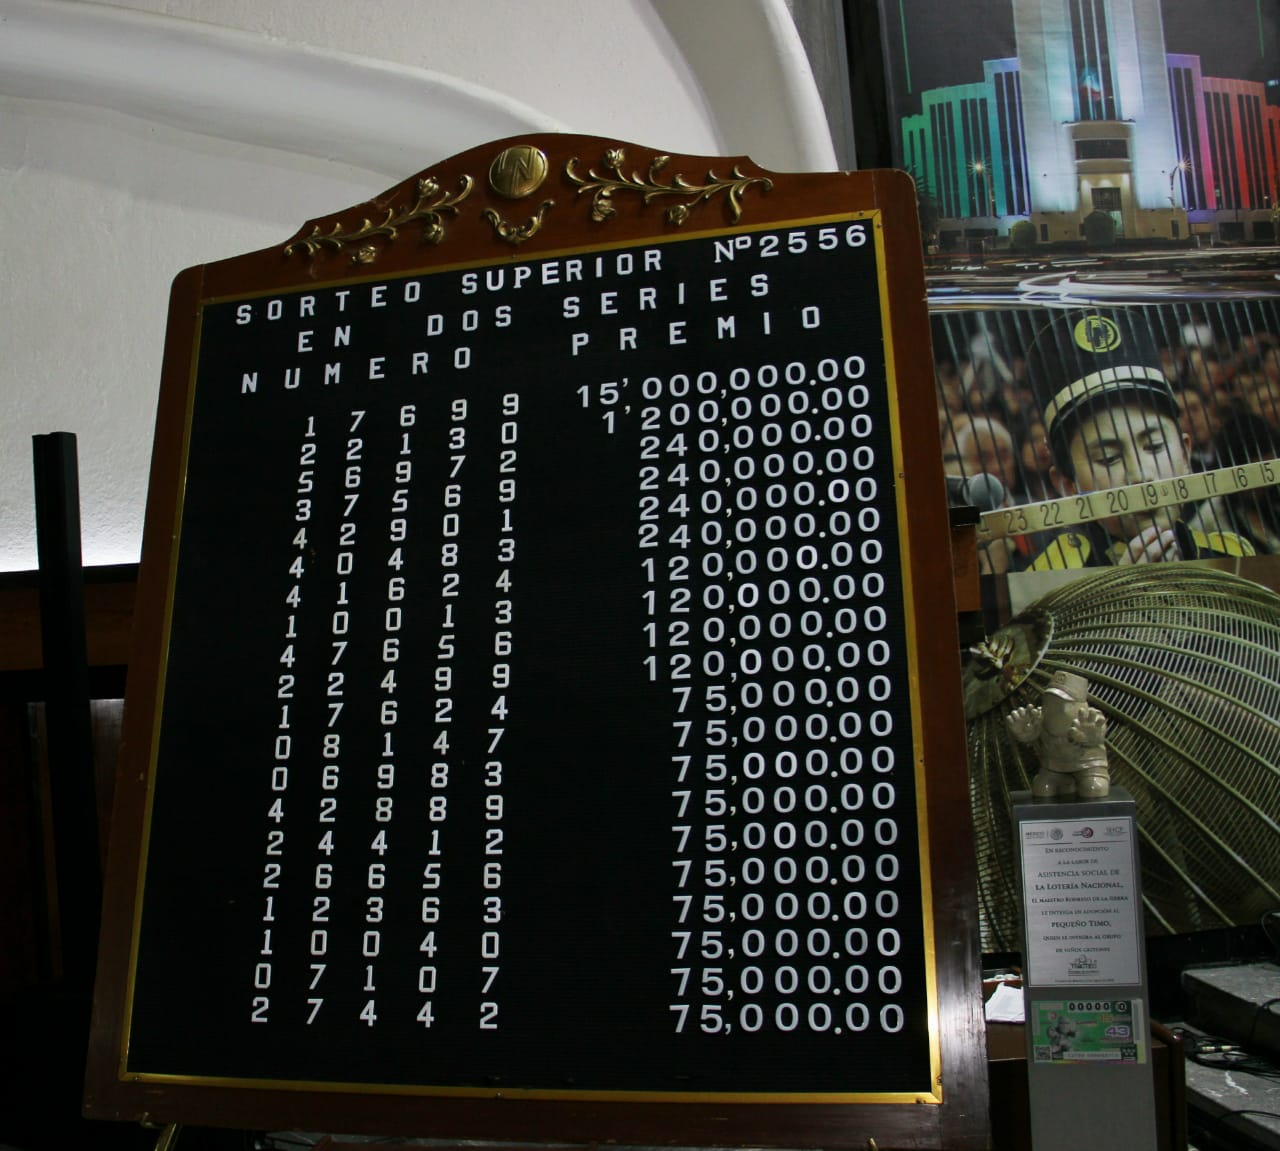 Fotografía del tablero de resultados del Sorteo Superior No. 2556